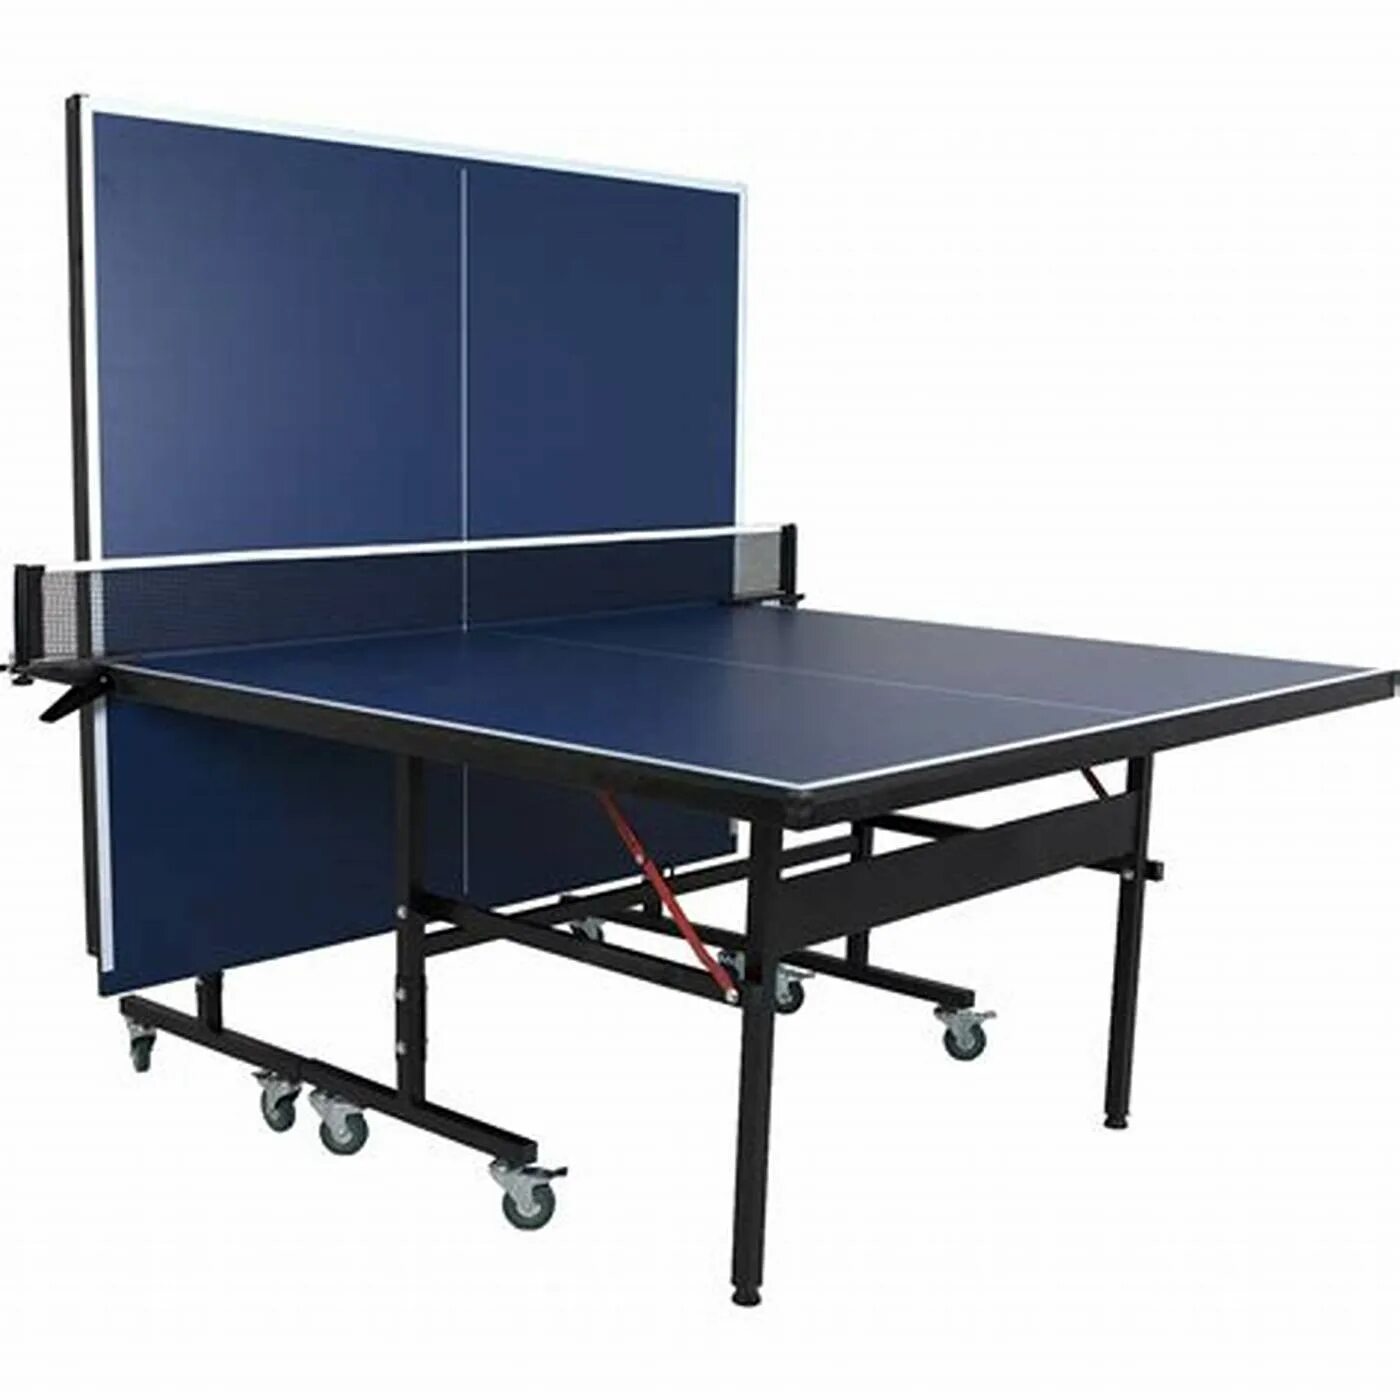 Теннисный стол Joola. Torneo стол для пинг-понга. Теннисный стол Neottec. Стол теннисный складной Light 61010. Складной теннисный стол для улицы